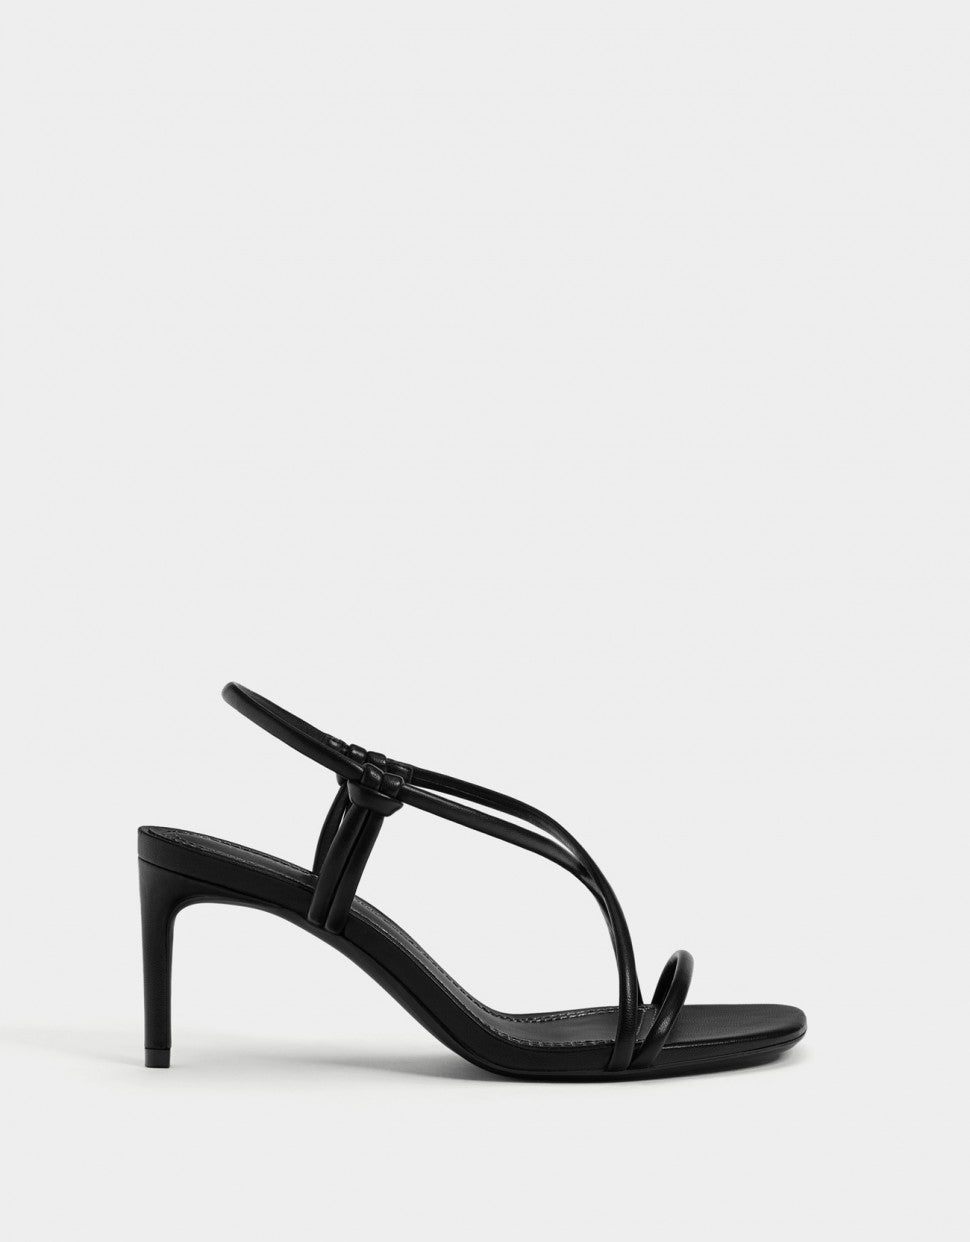 Bershka strappy black sandal